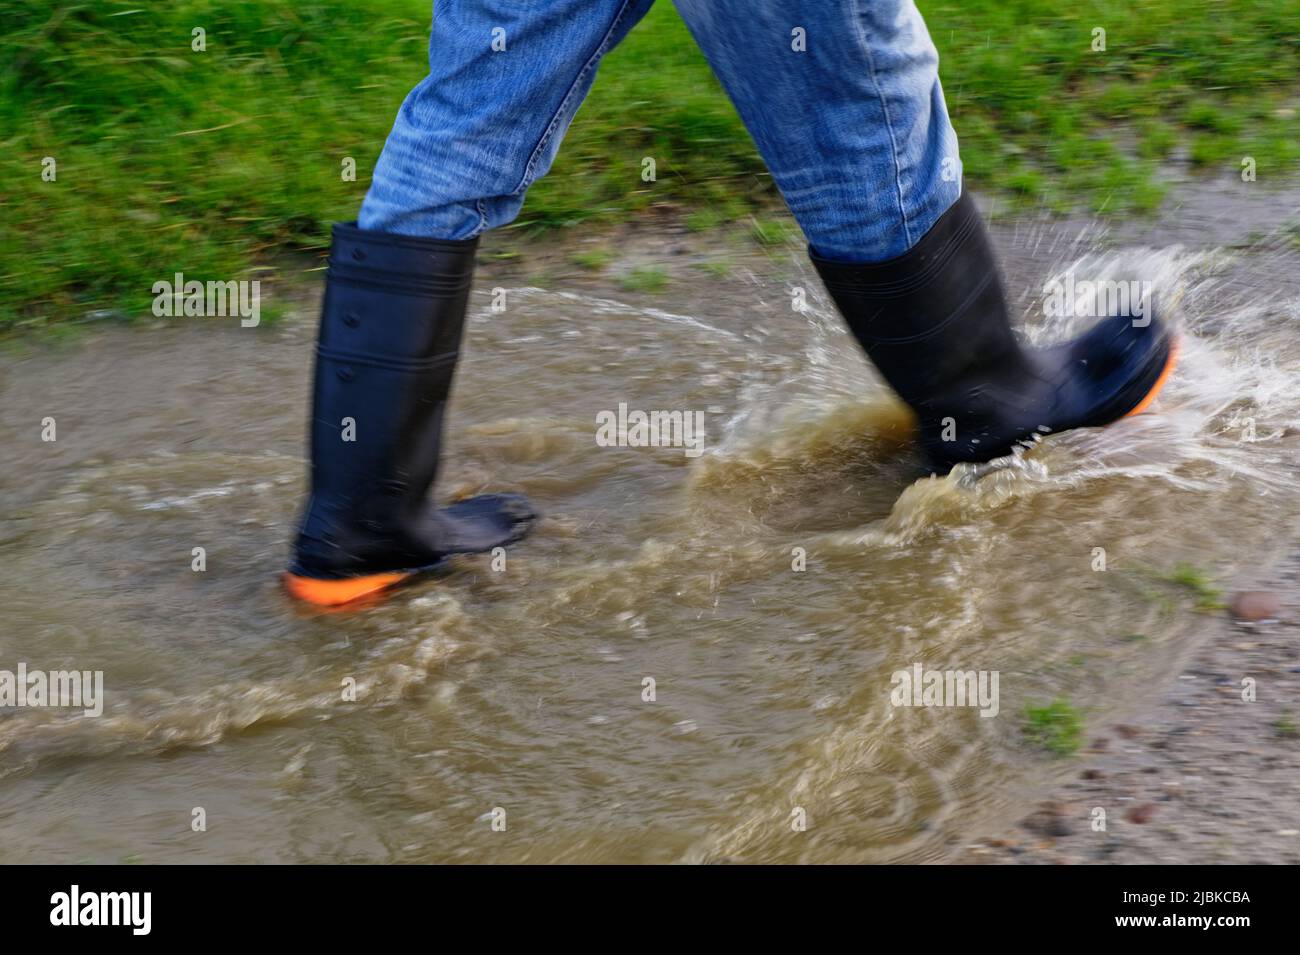 Las botas de agua mantienen los pies secos mientras que salpican a través de un charco fangoso Foto de stock